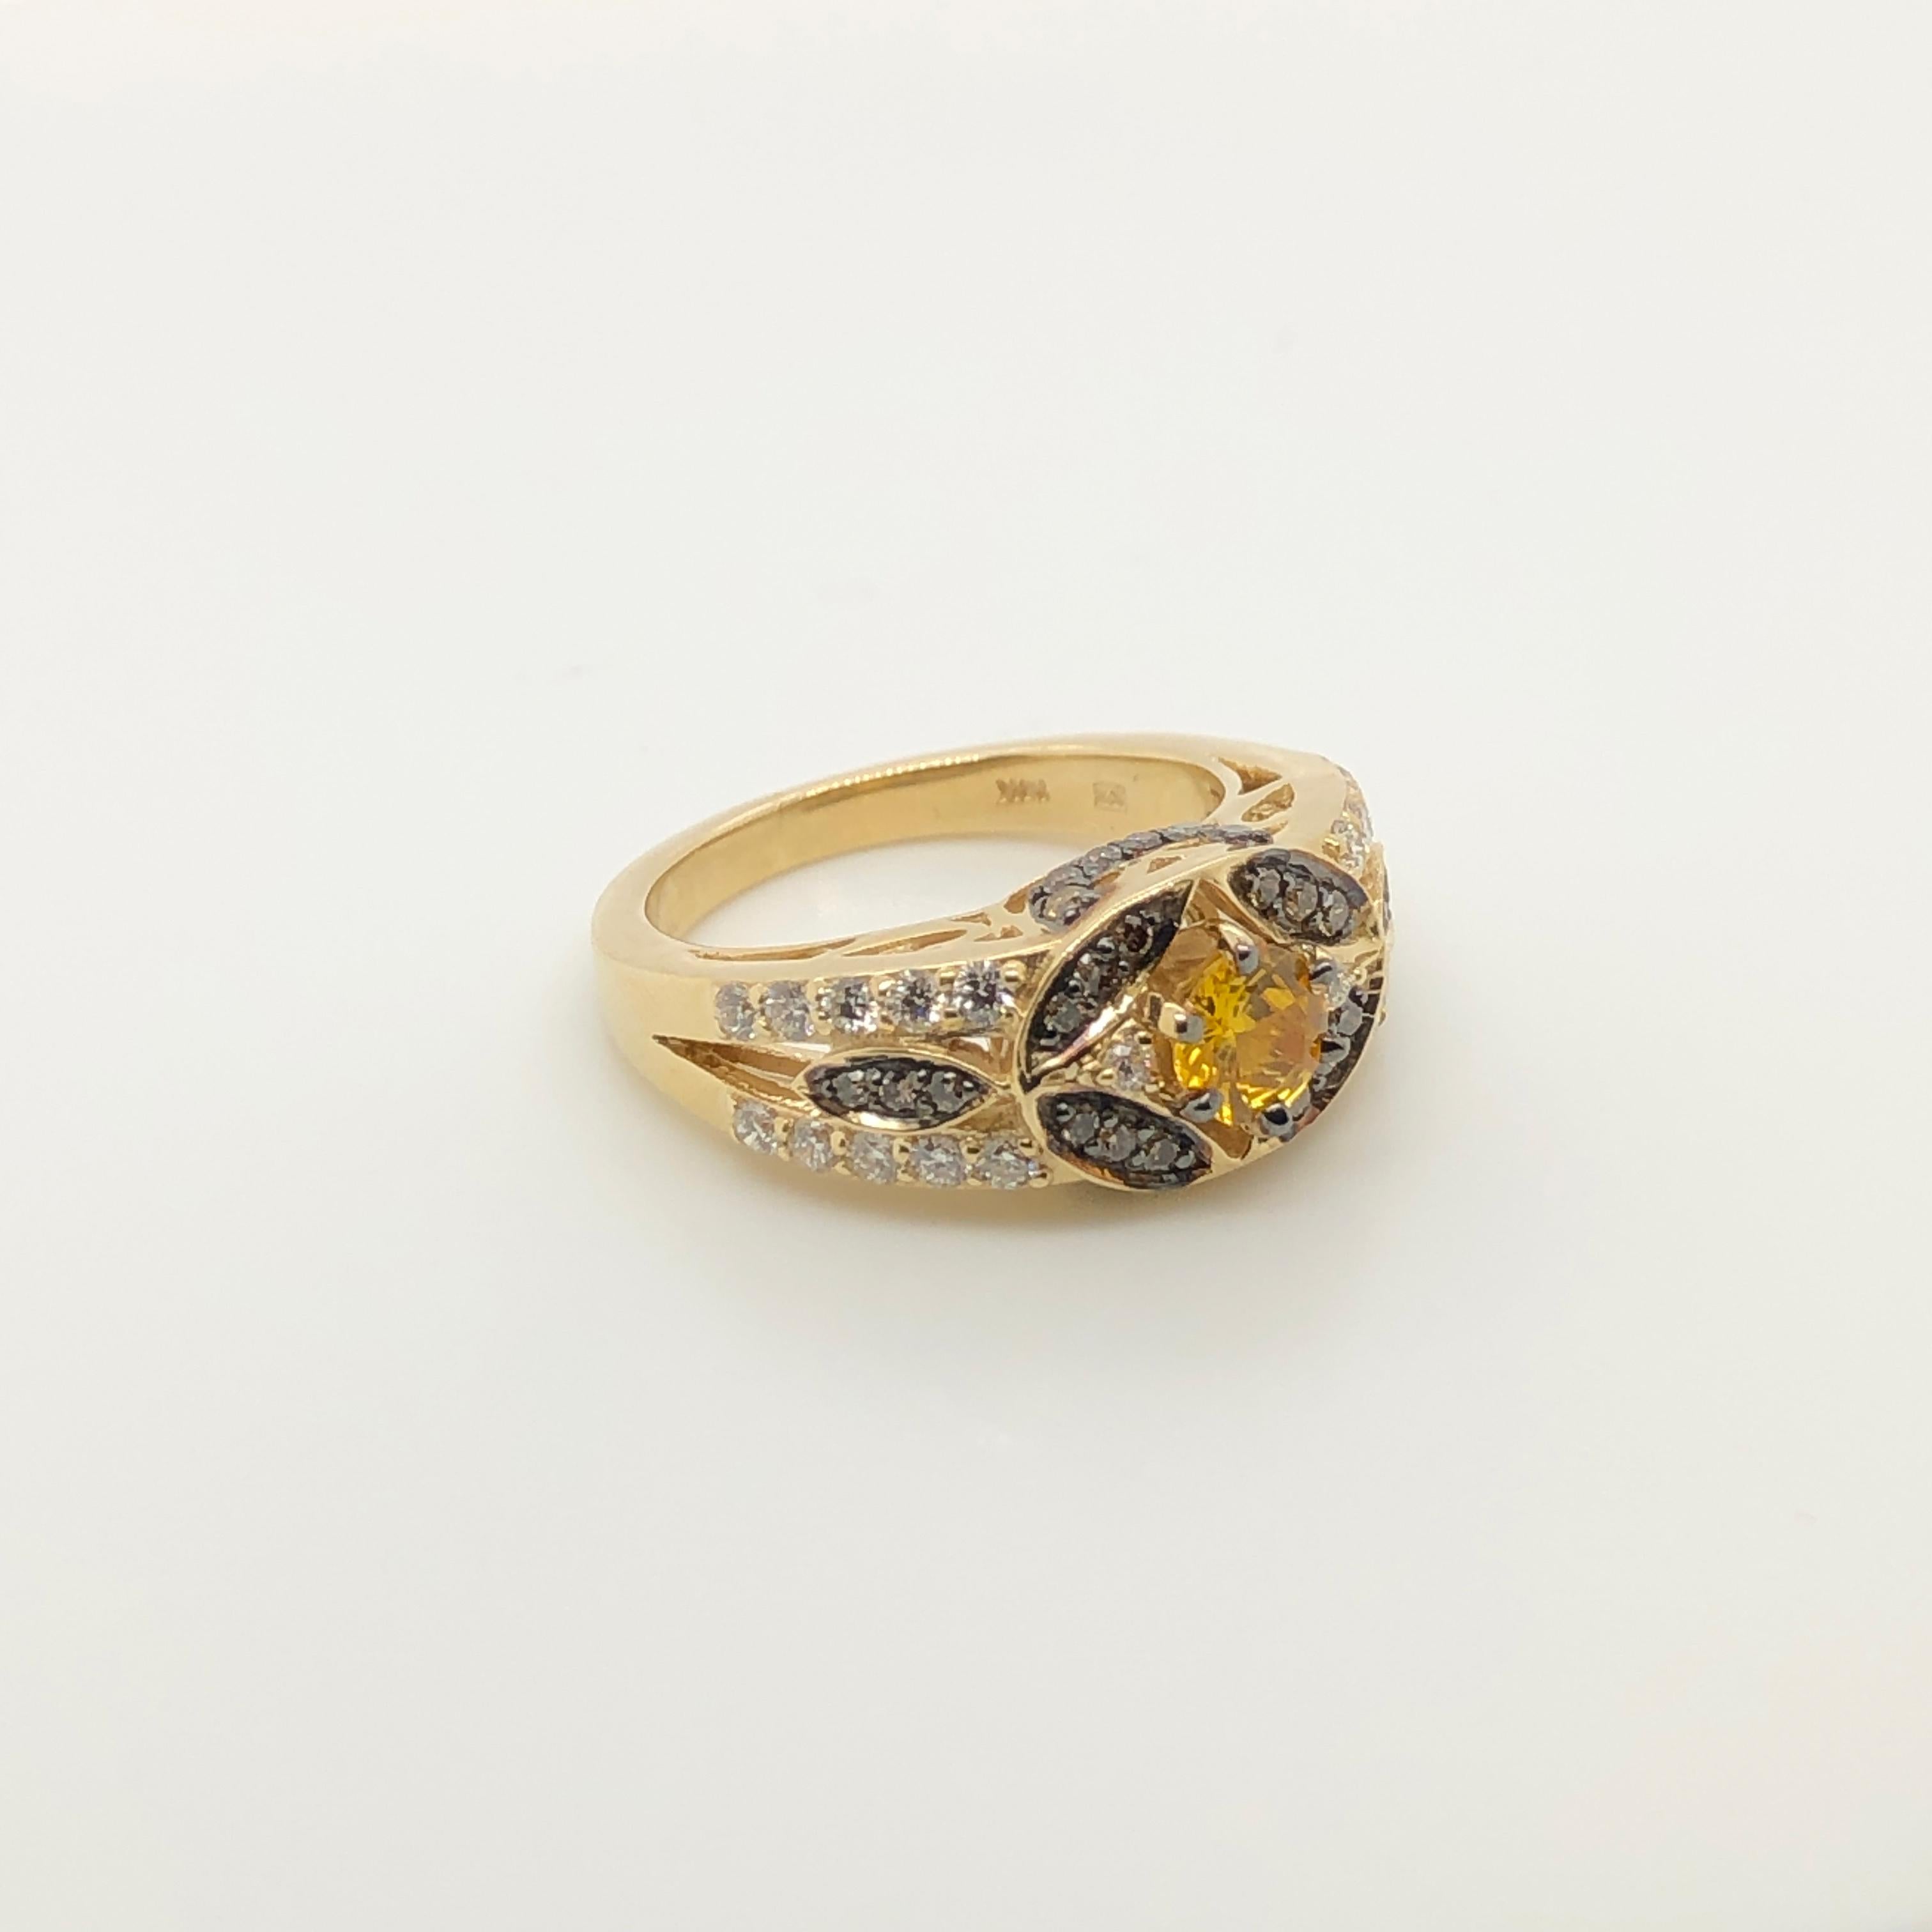 Schokoladen-Diamanten (1/3 ct t.w.) und Vanille-Diamanten (3/8 ct t.w.) verleihen diesem Ring aus 14 Karat Gelbgold von Le Vian ein süßes Funkeln, in dessen Mitte ein 1/2 ct gelber Saphir sitzt.
Ringgröße: 7